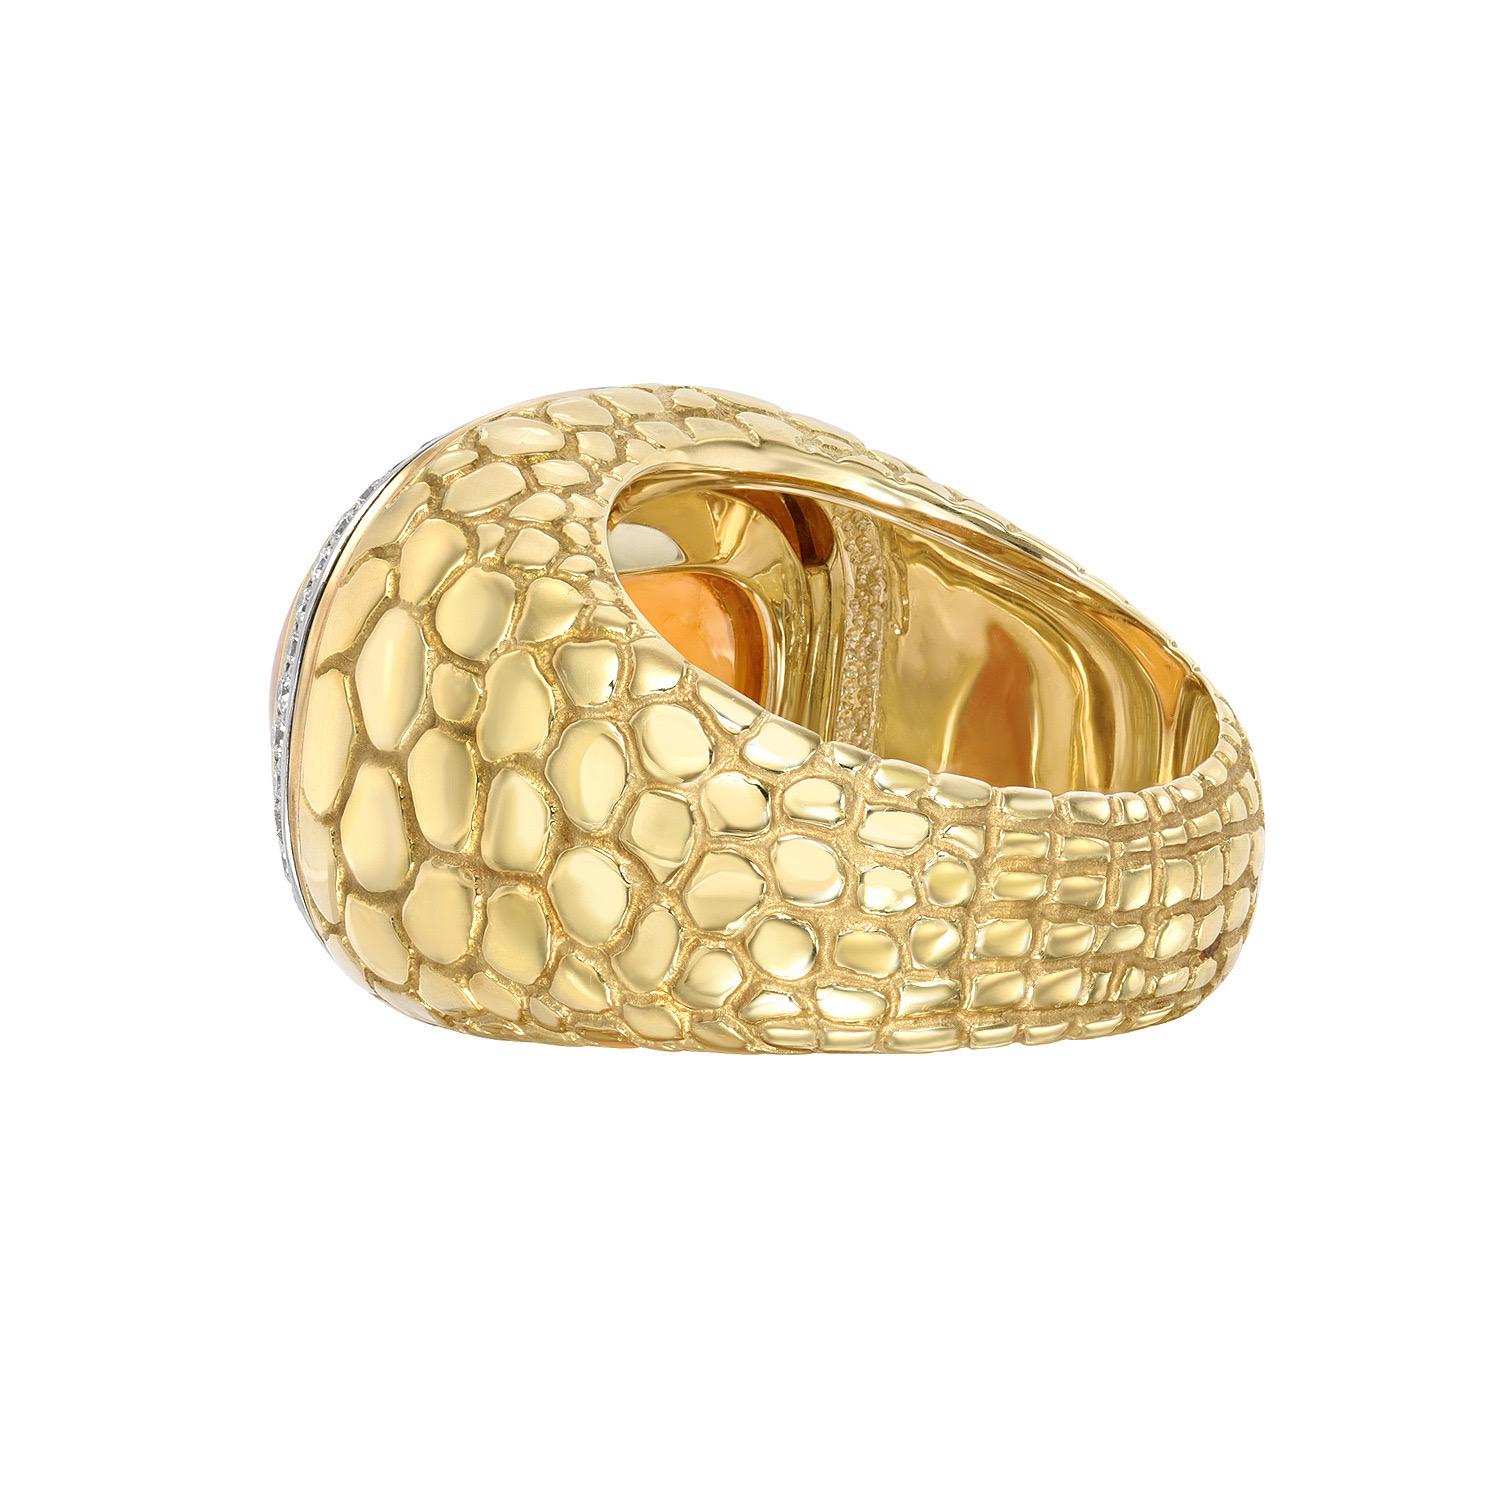 Bague en or jaune 18 carats et platine à motif de crocodile présentant un incroyable cabochon de grenat mandarin Sugarloaf de 29,93 carats entouré d'un total de diamants ronds de taille brillant de 0,40 carat.
Bague de taille 6. Le redimensionnement